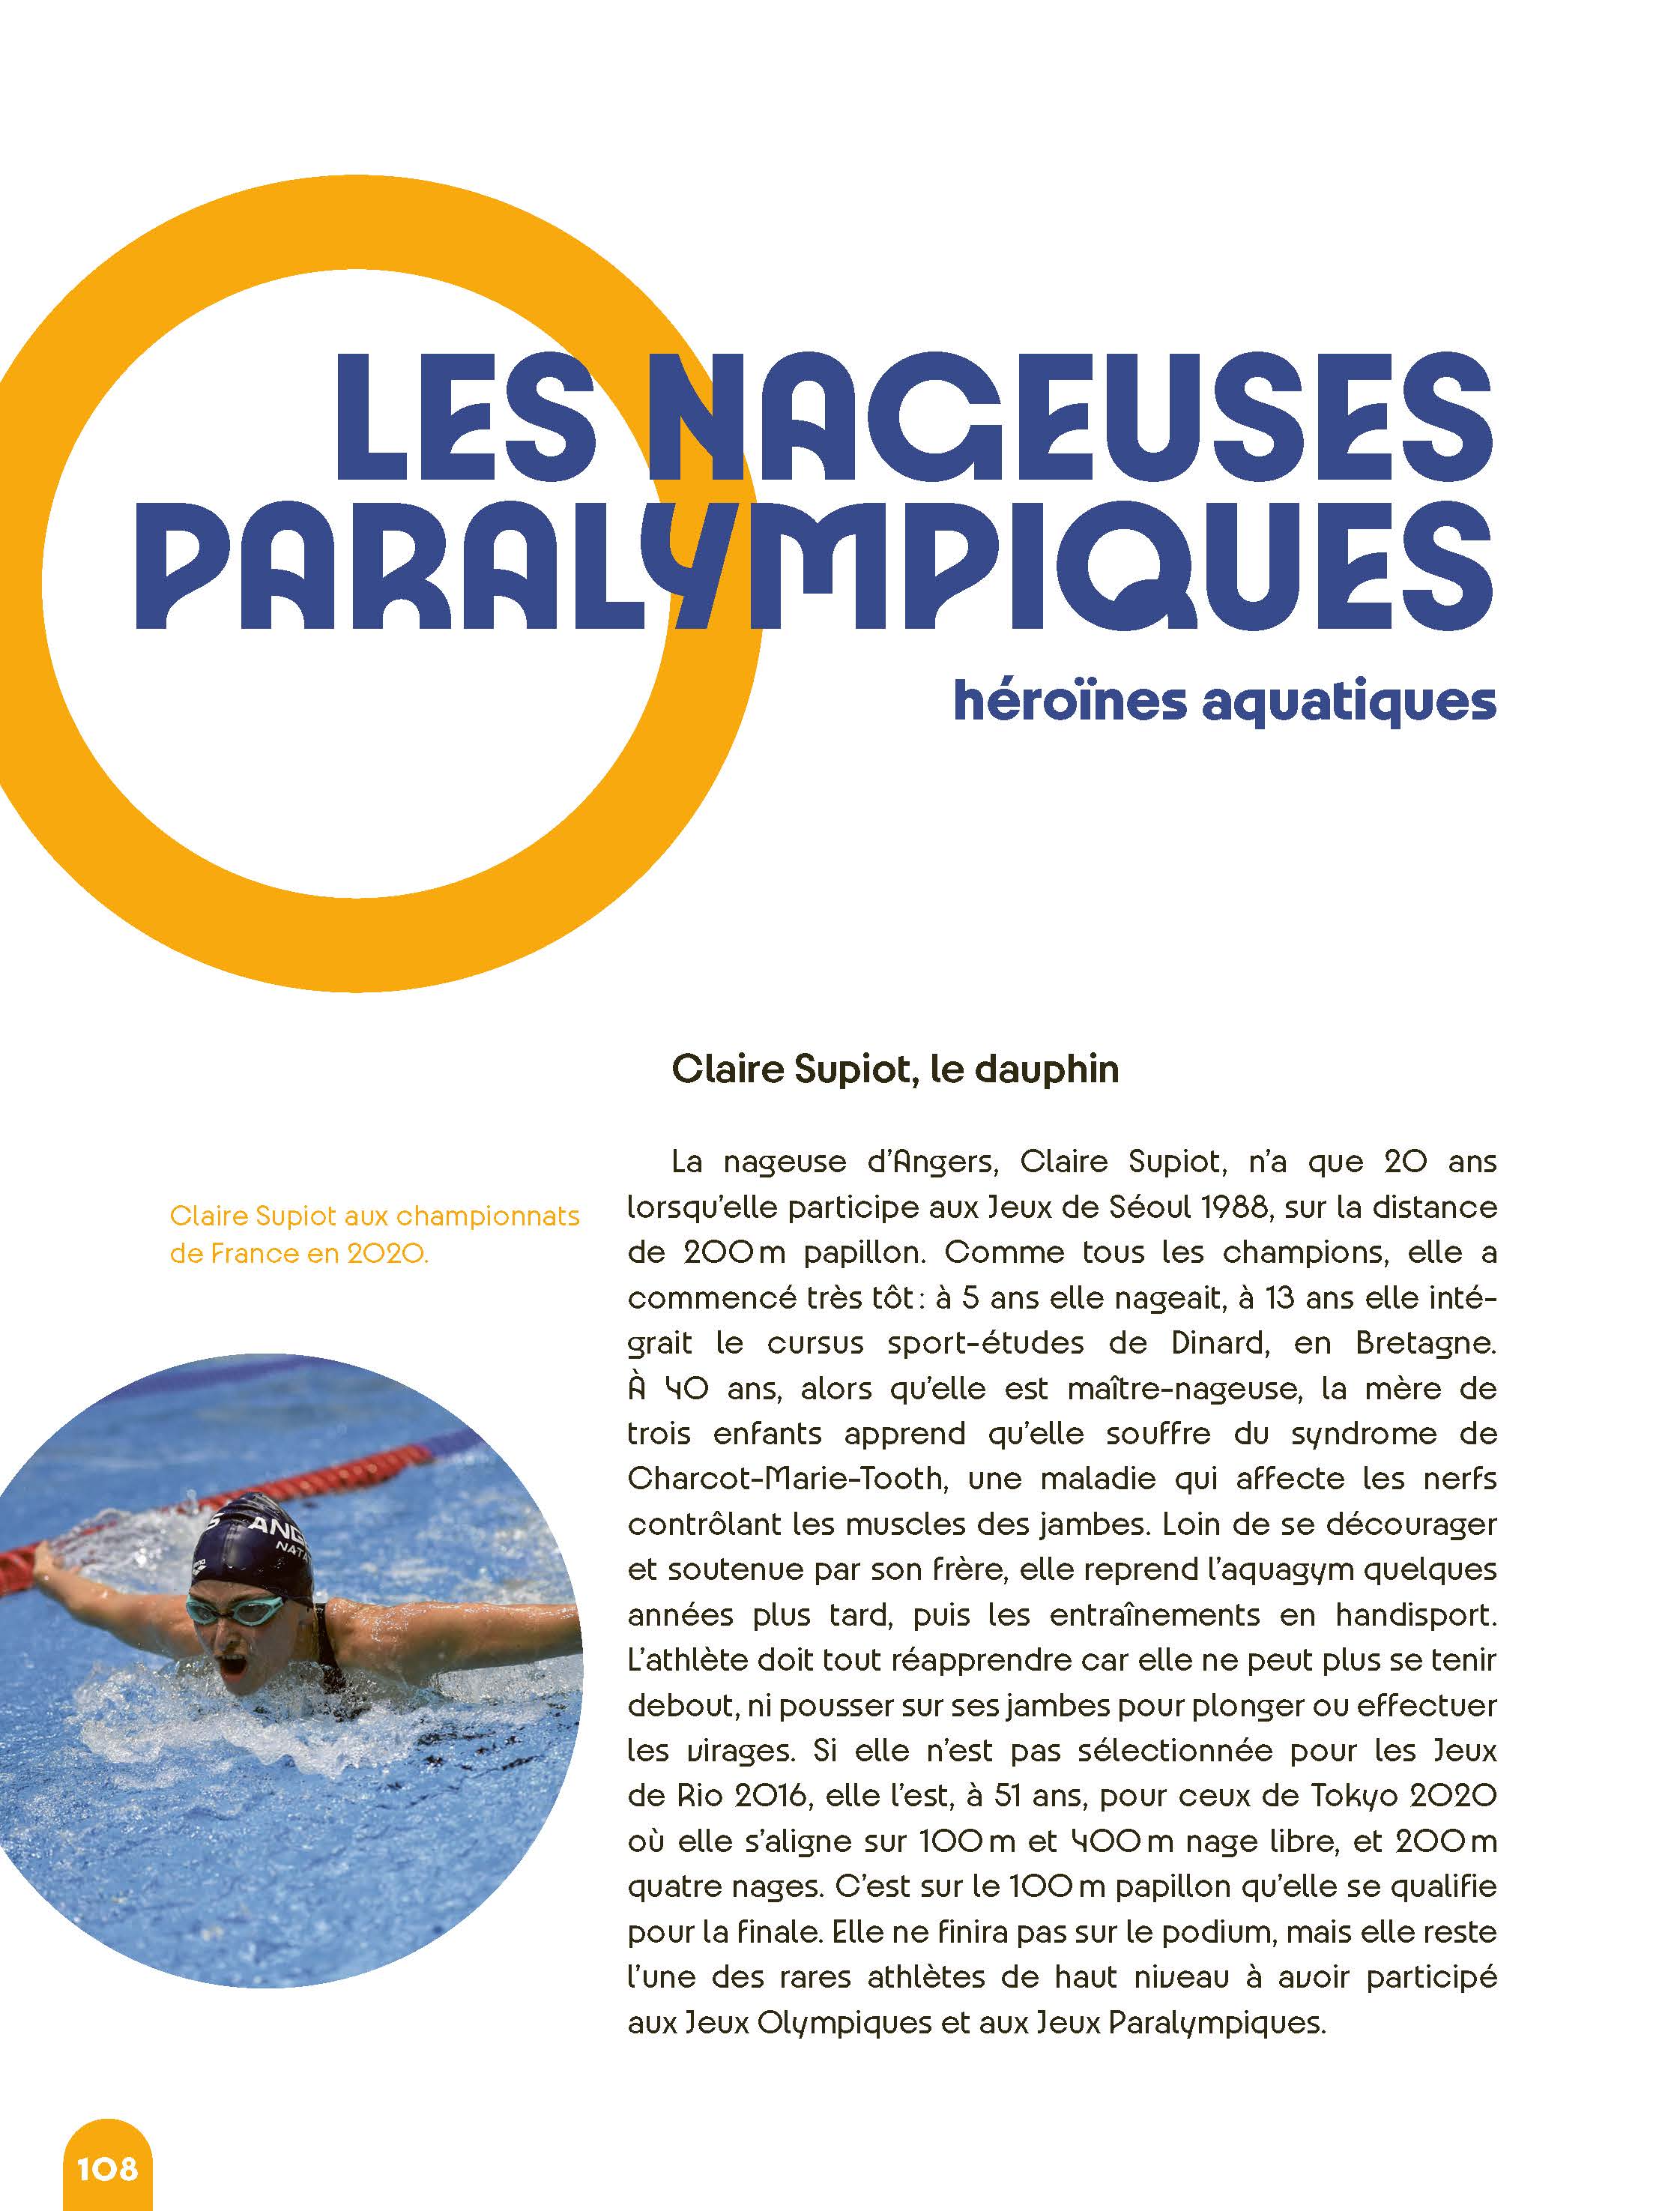 Les Stars Des Jeux Olympiques Et Paralympiques : Paris 2024